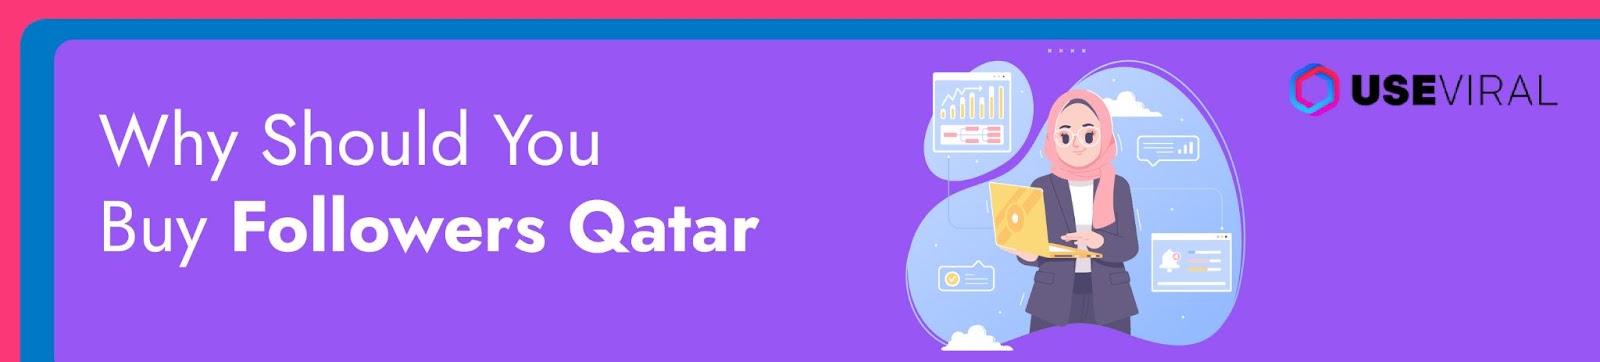 Why Should You Buy Followers Qatar